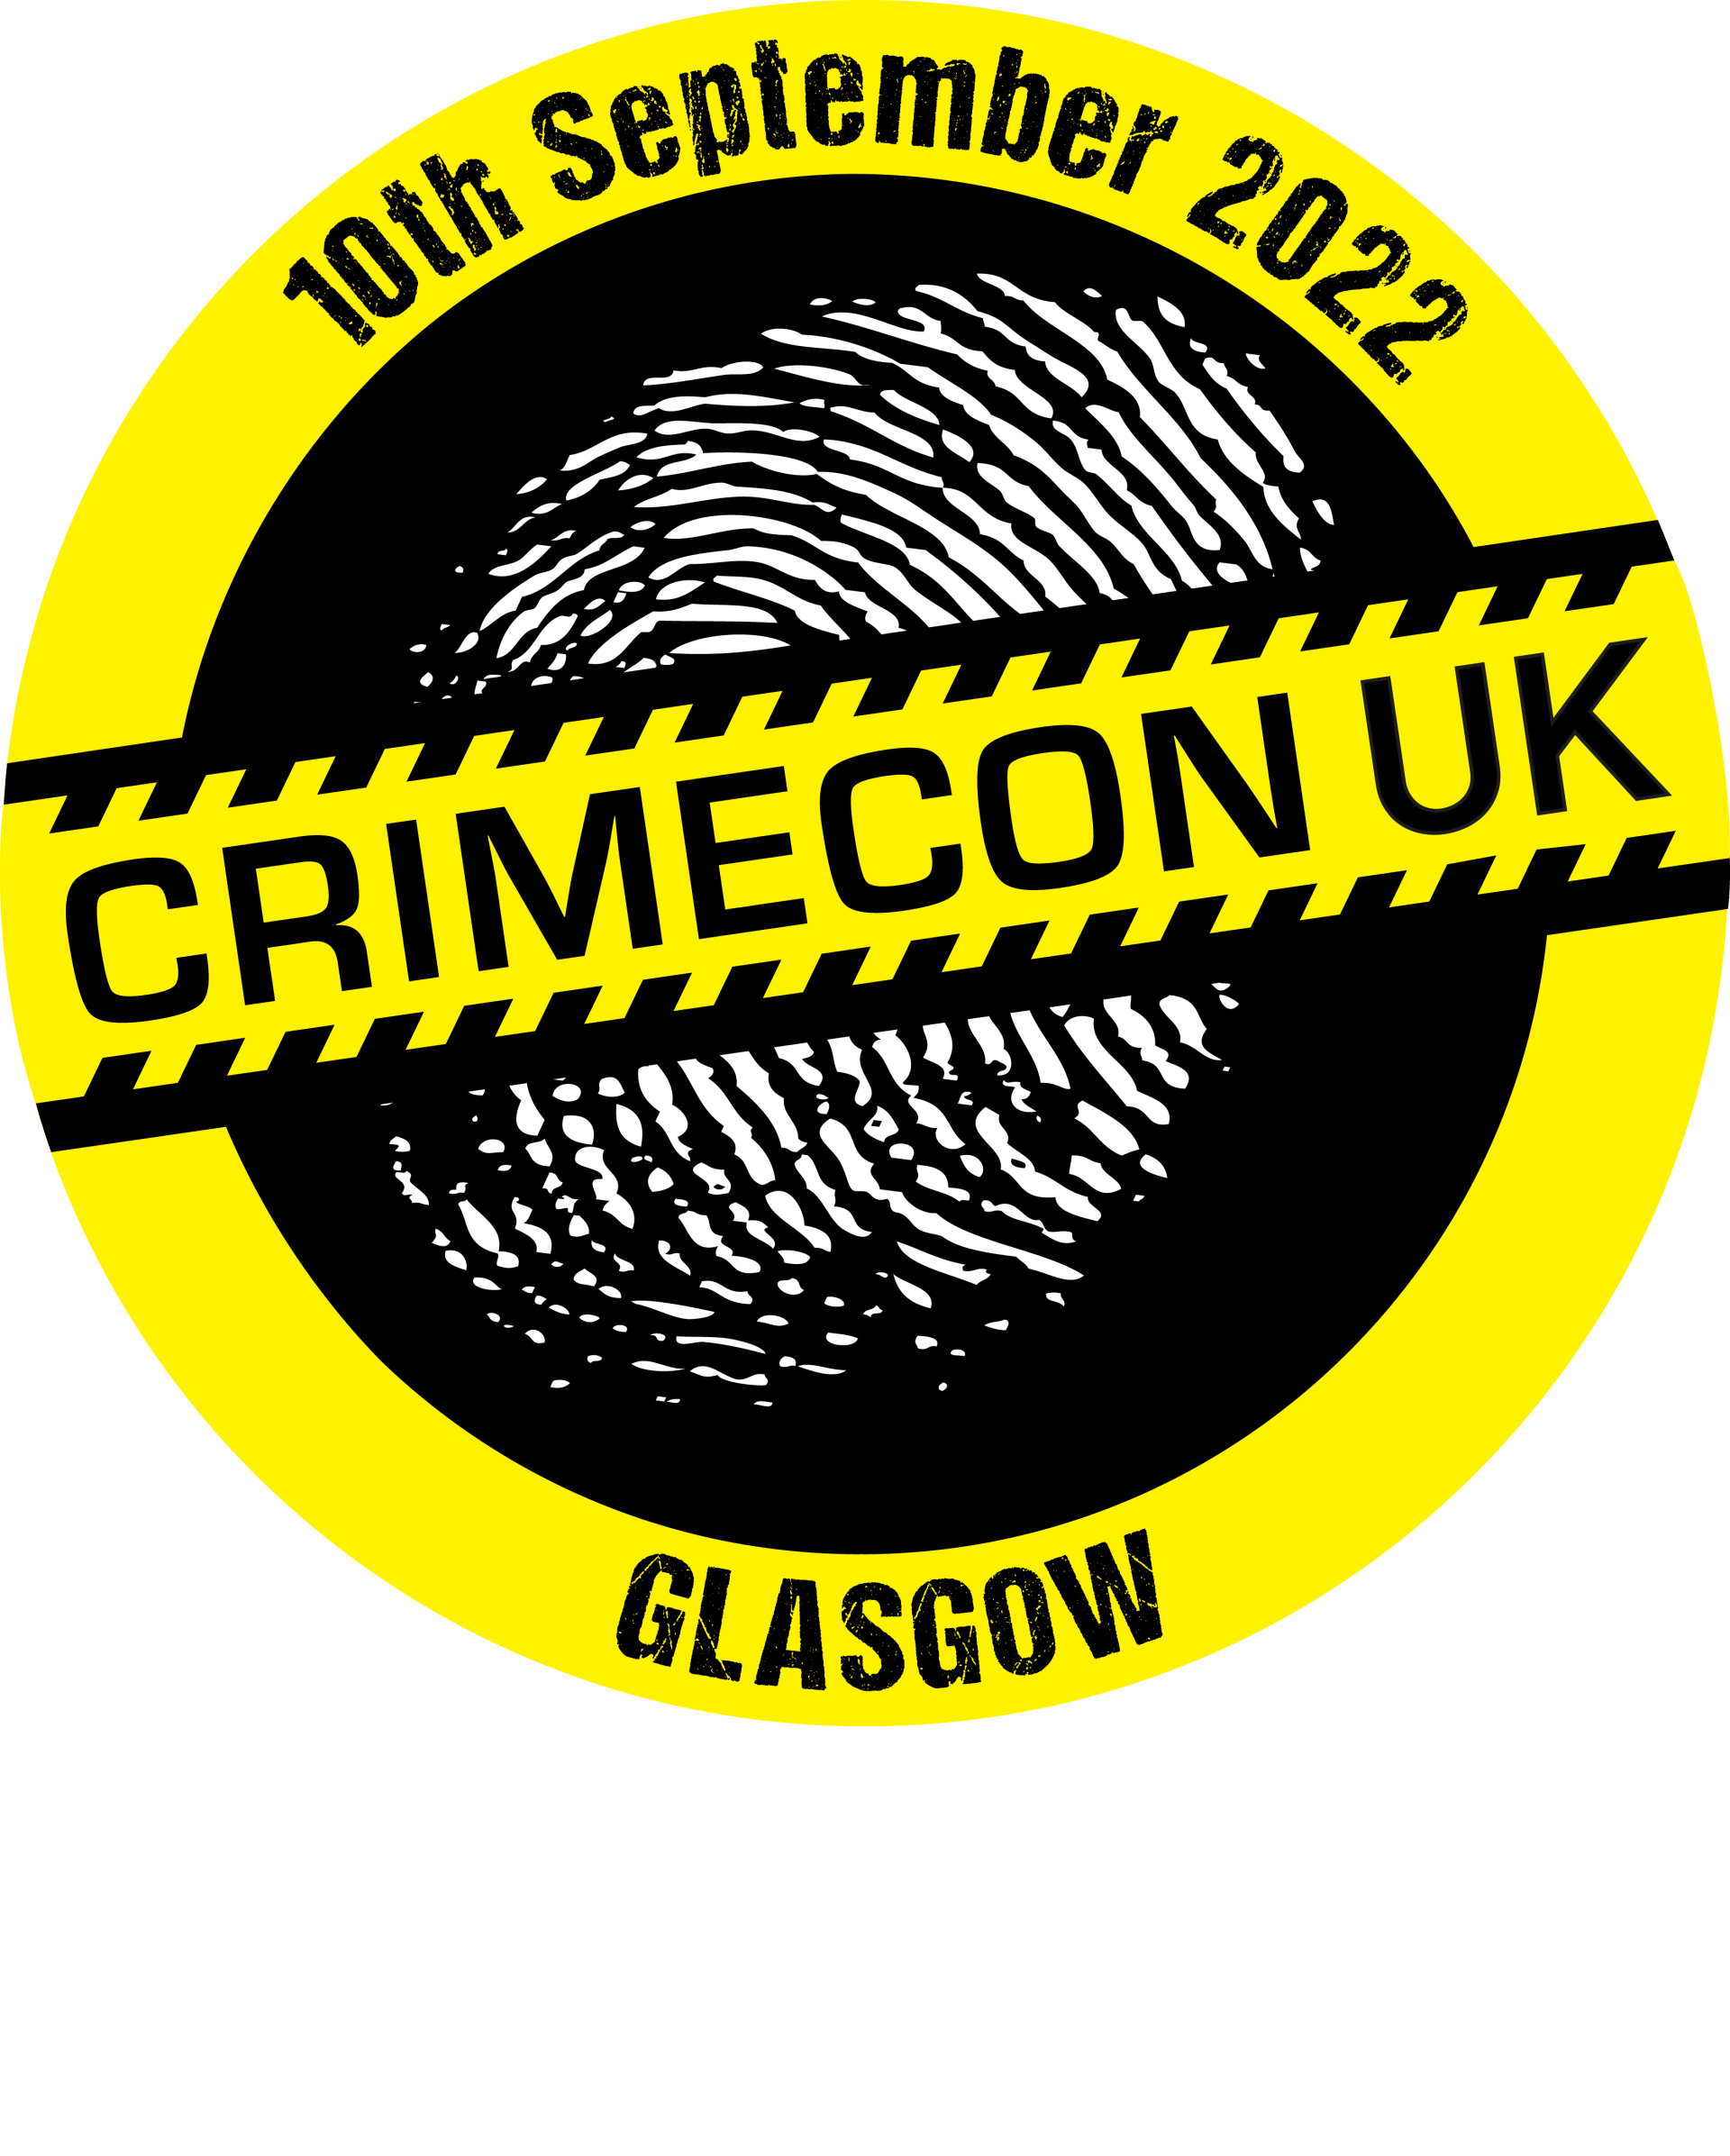 CrimeCon Glasgow 22 New Location CrimeCon UK